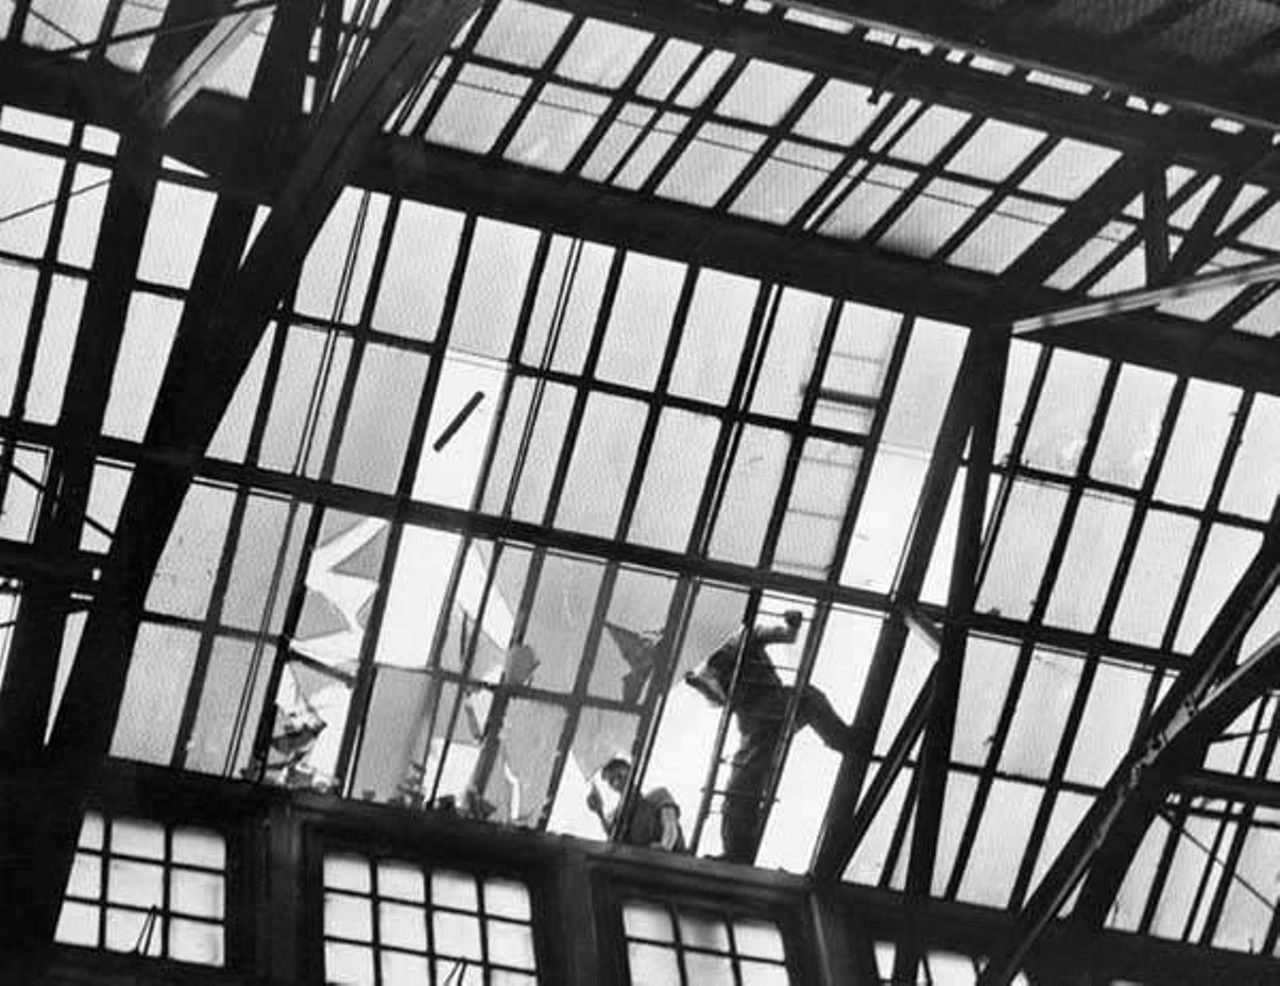 The Arcade skylights, 1941